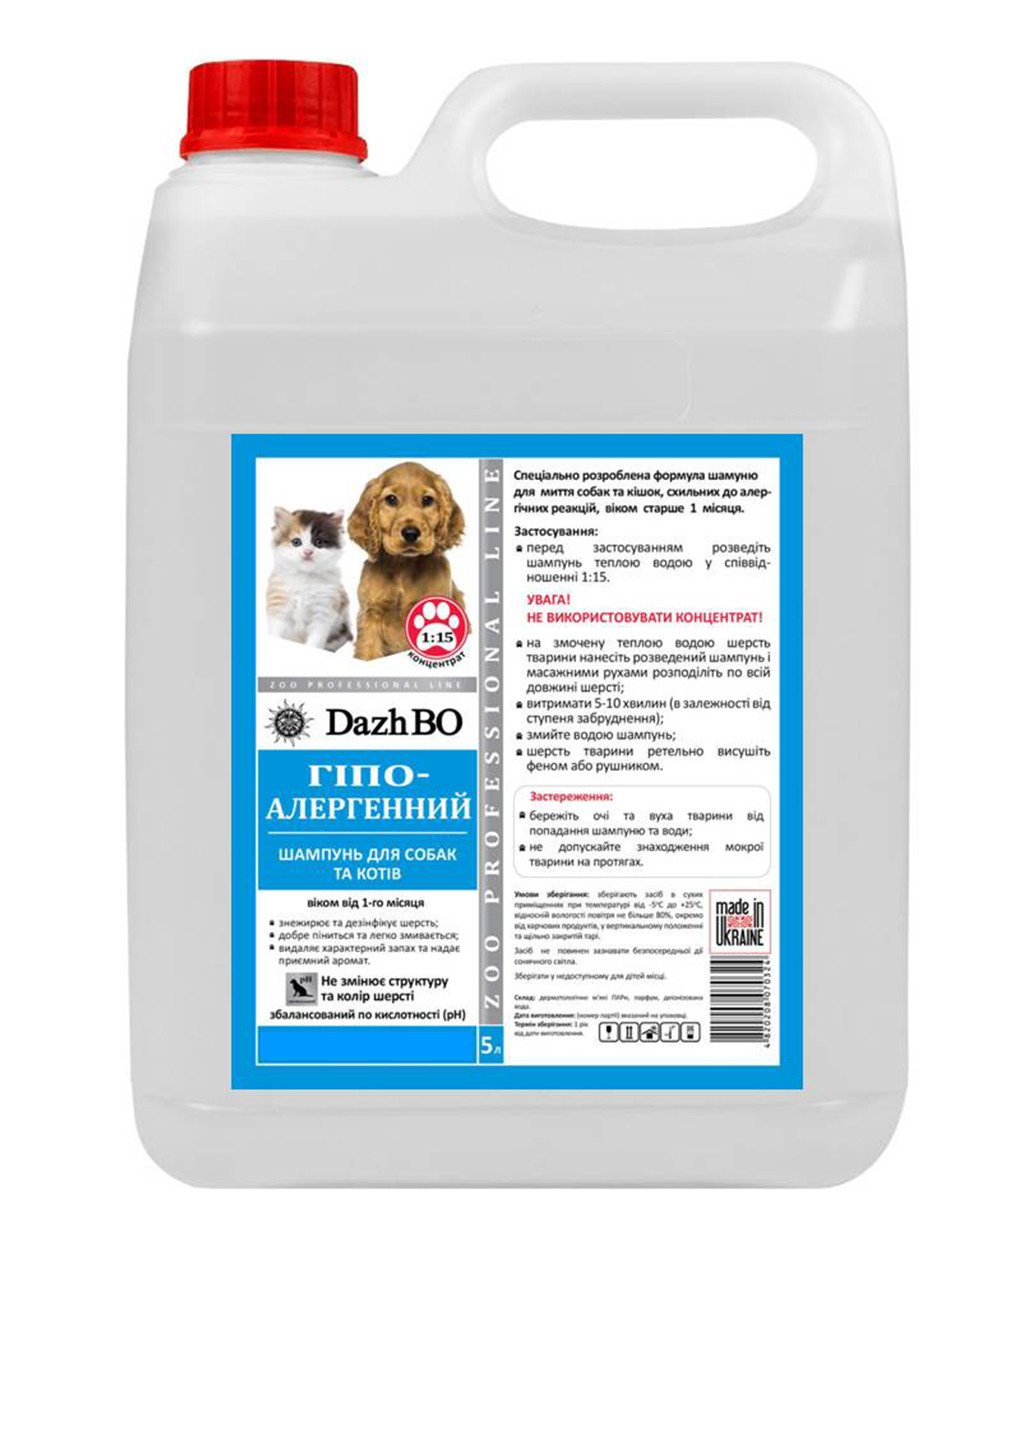 Шампунь для собак и кошек гипоаллергенный, 5 л ДажБО (230093024)